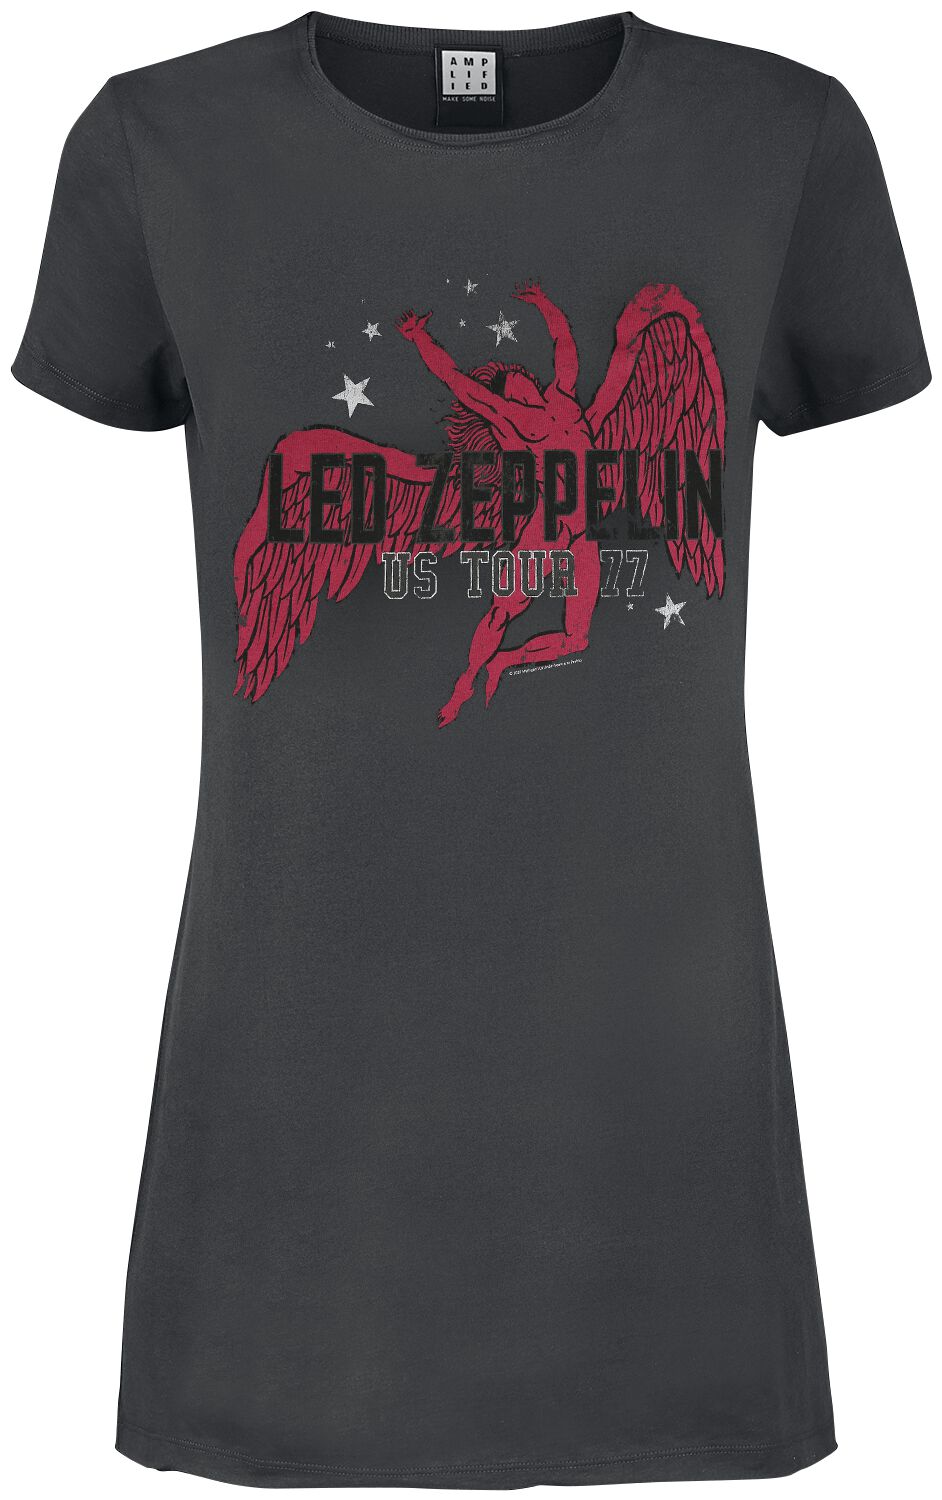 Robe courte de Led Zeppelin - Amplified Collection - Icarus - XS à S - pour Femme - anthracite